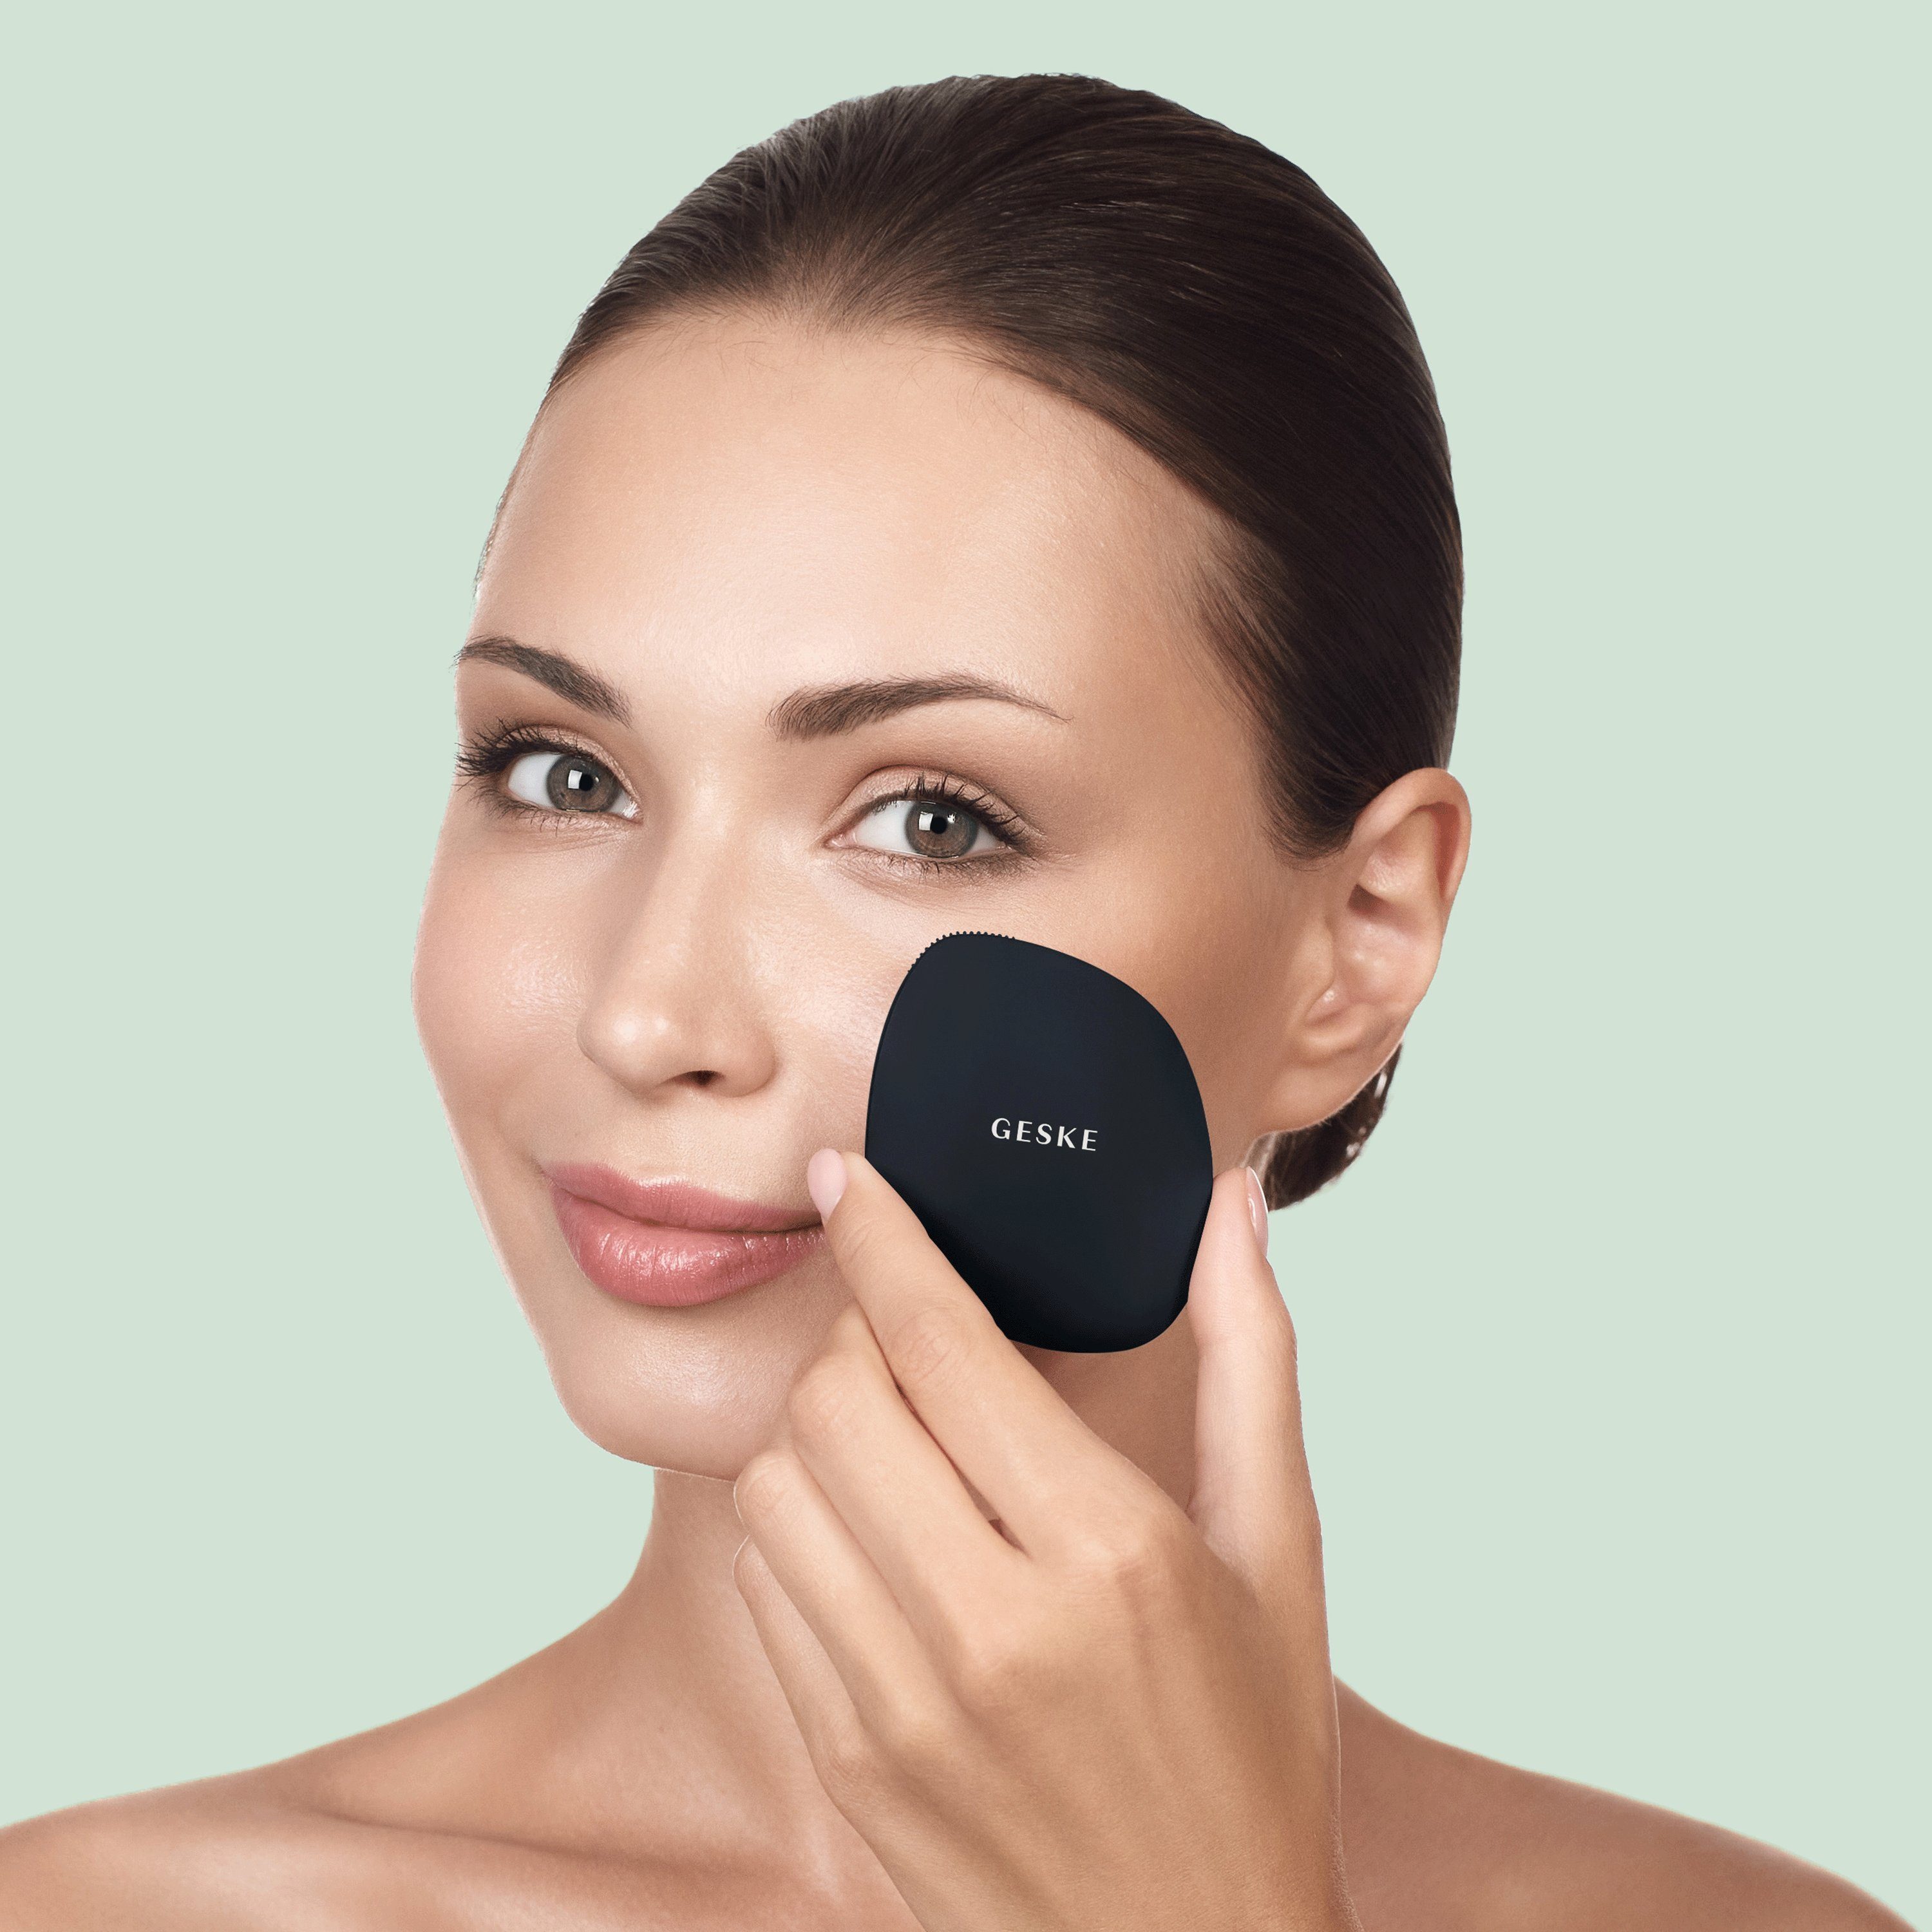 GESKE German Tech in Device), Gesichtsreinigungsbürste 1-tlg., deine GESKE (SmartAppGuided personalisierte 4 Hautpflegeroutine. Mit Du 1, Black erhältst kostenloser APP Facial der Beauty App Packung, Brush inkl. Elektrische SmartAppGuided™